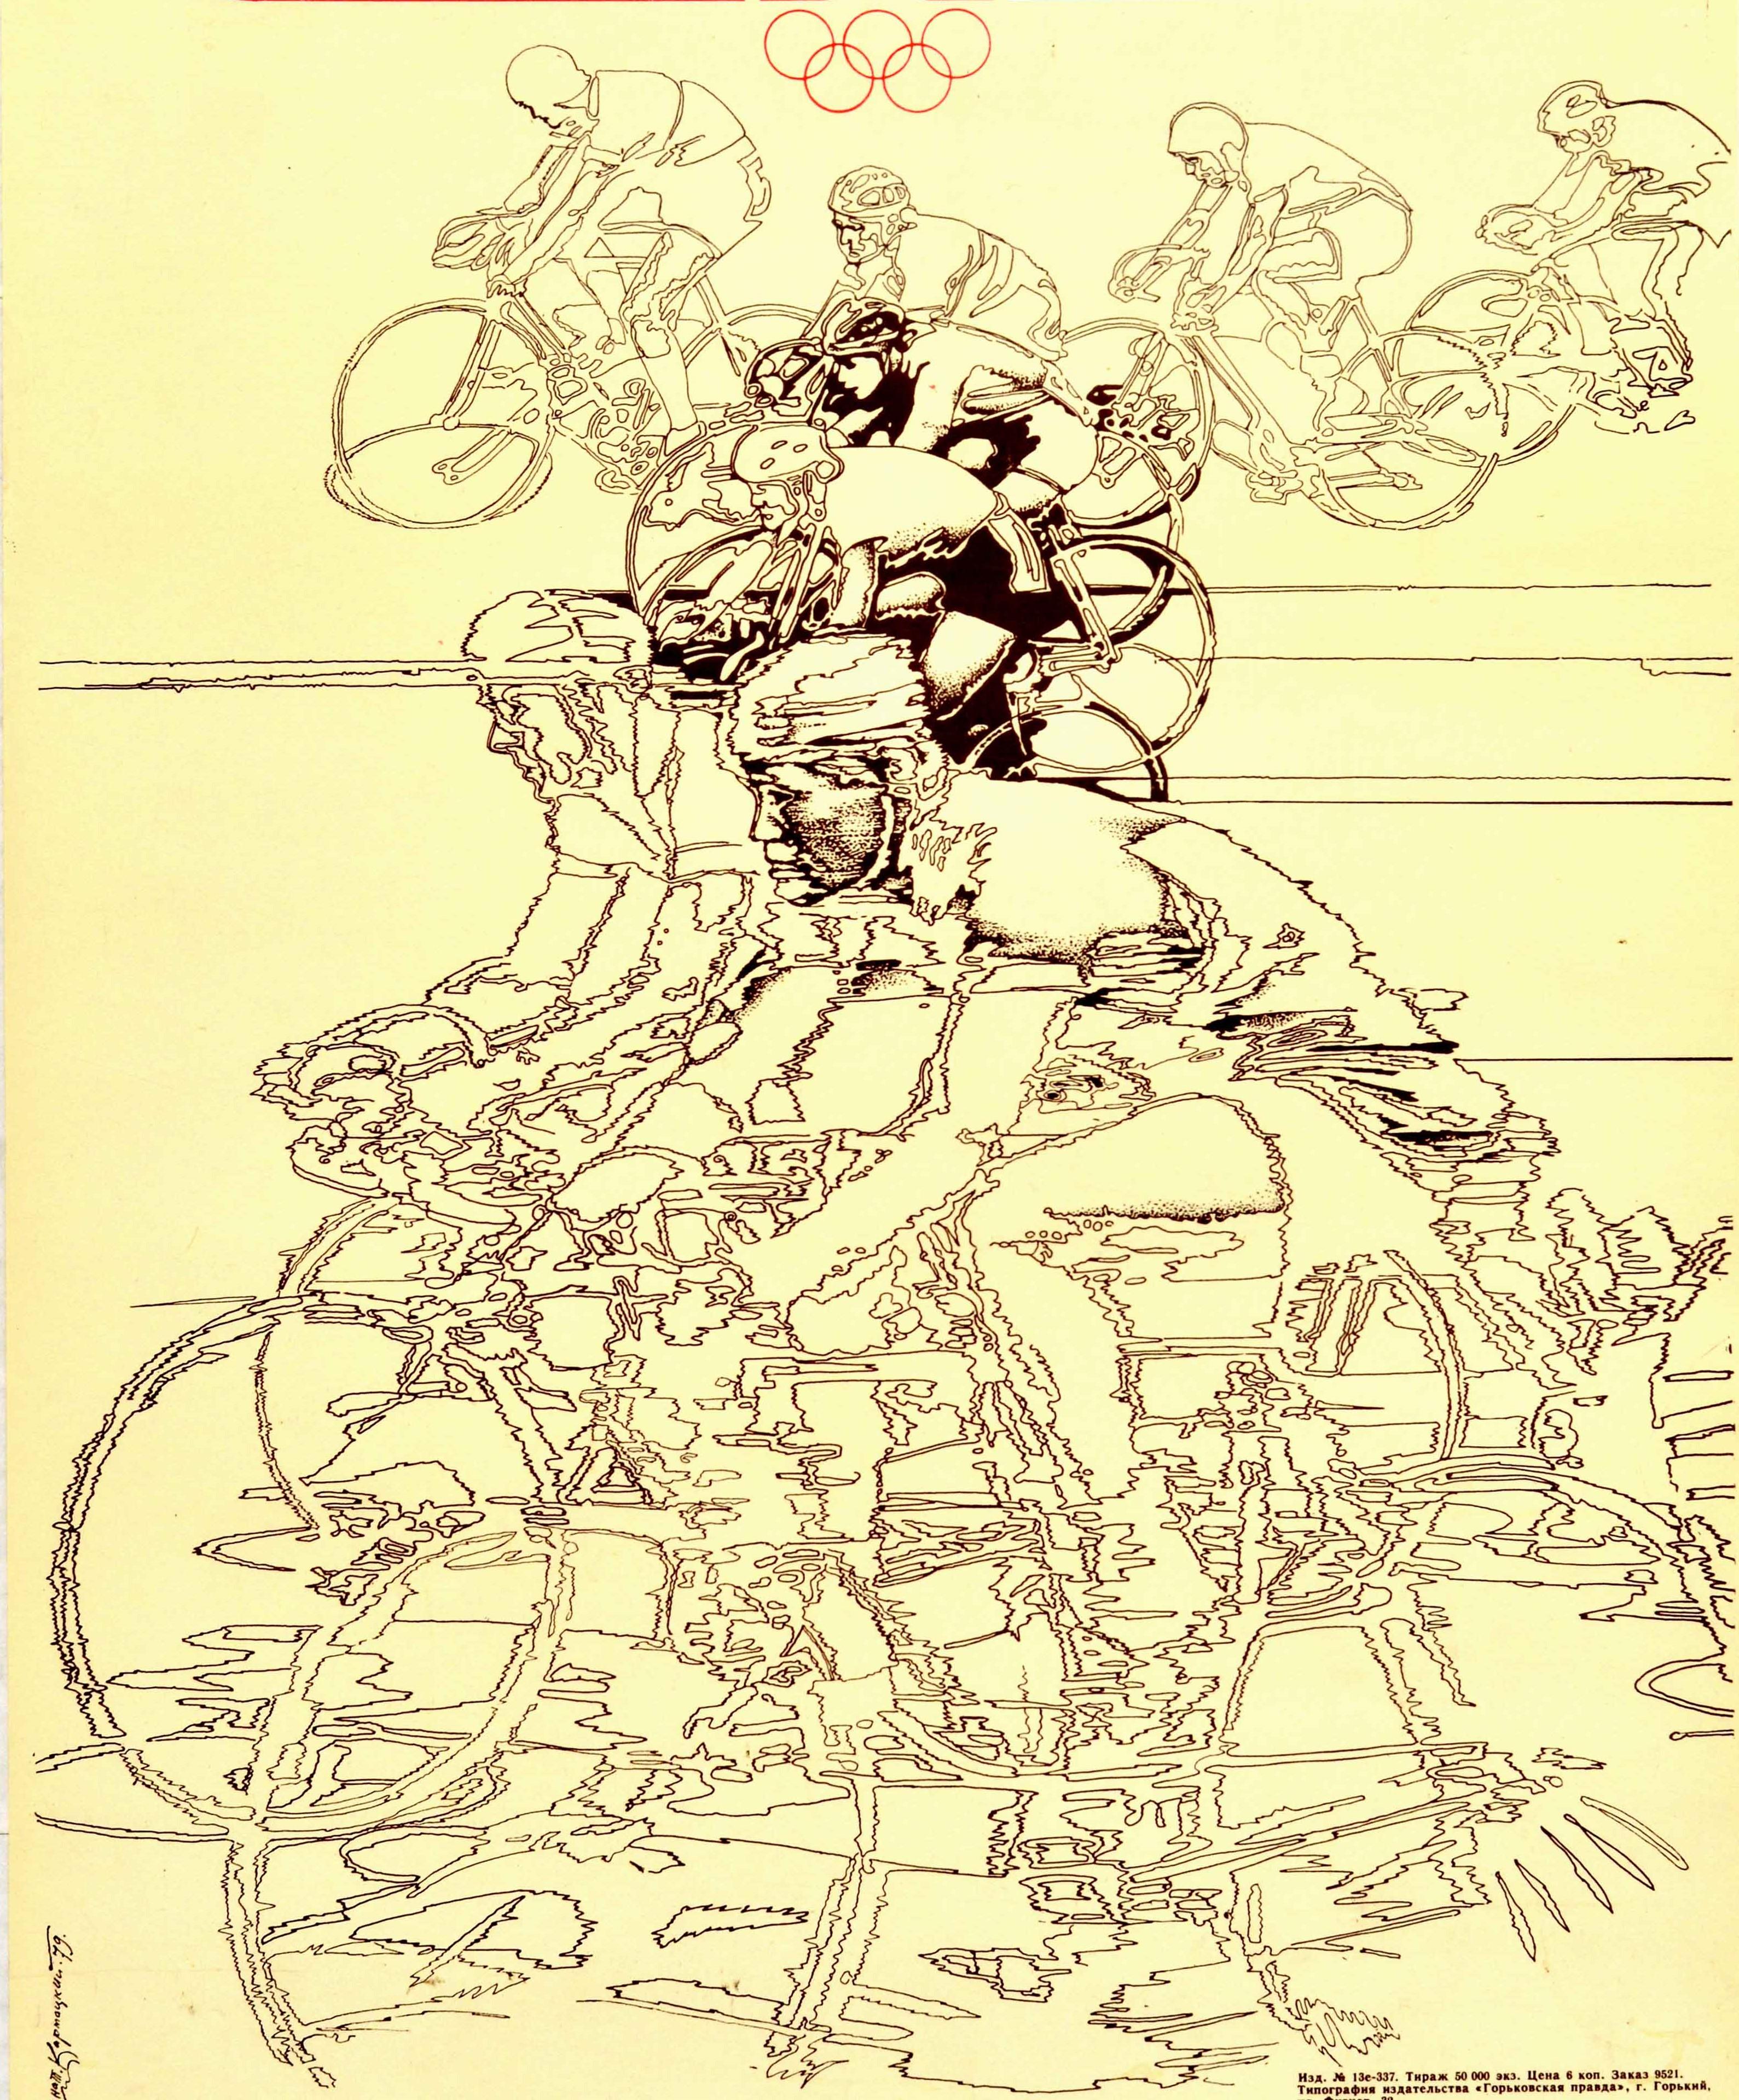 Original-Sportplakat für die Olympischen Spiele 1980 in Moskau Russland mit einem dynamischen Design von Radfahrern, die auf ihren Rädern gegeneinander antreten, mit dem Symbol des Radsportwettbewerbs und dem Moskauer Olympia-Logo und den Ringen in